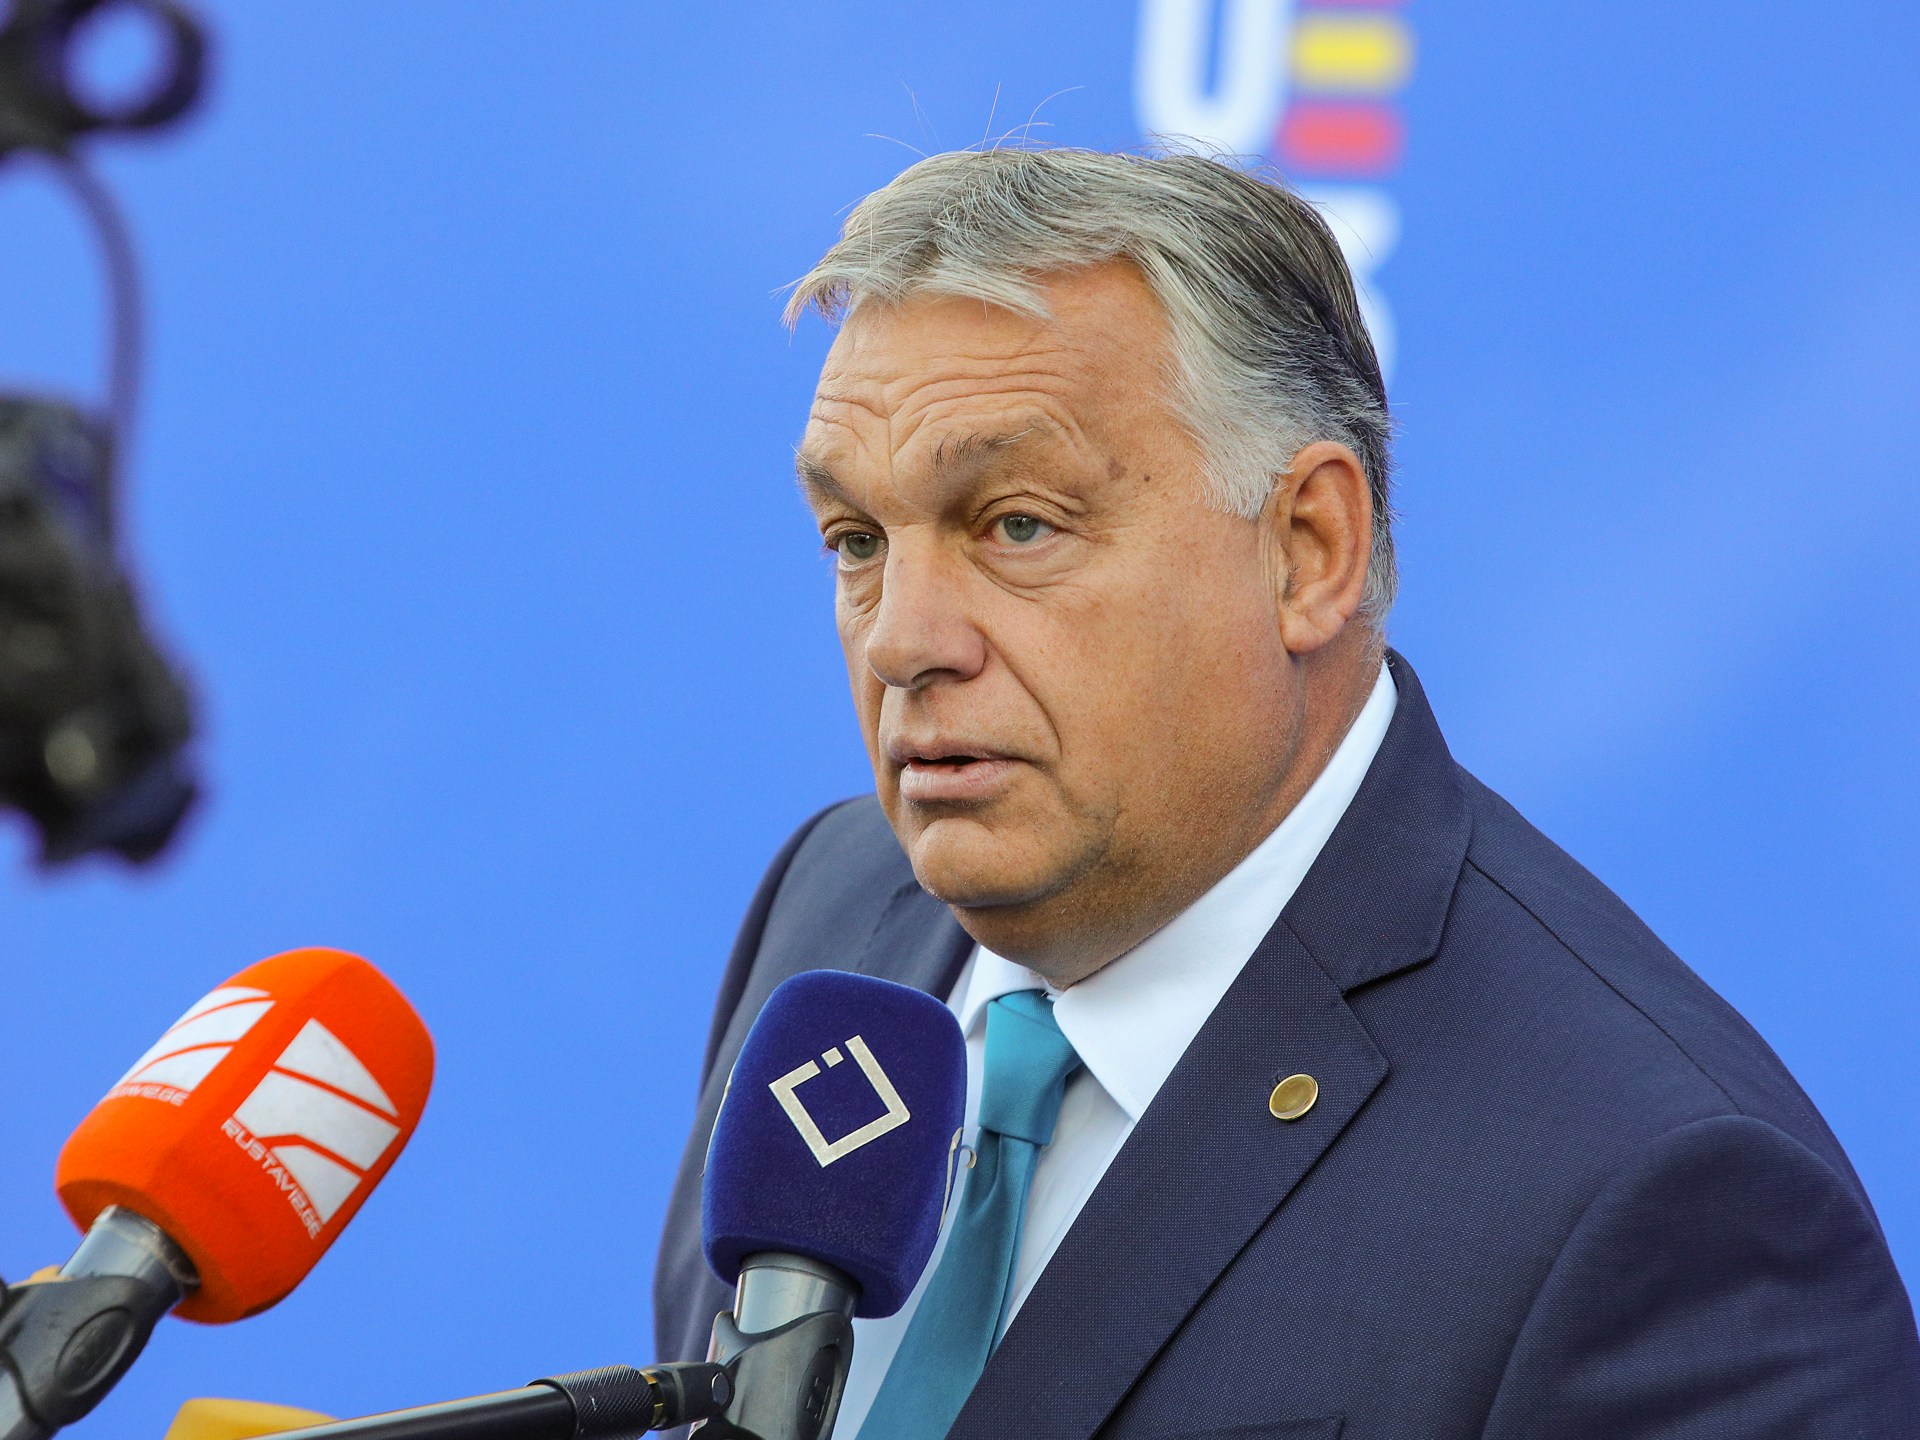 L'ungherese Orban afferma che Trump ha detto che non avrebbe “dato un centesimo” all'Ucraina |  Notizie sulla guerra russo-ucraina